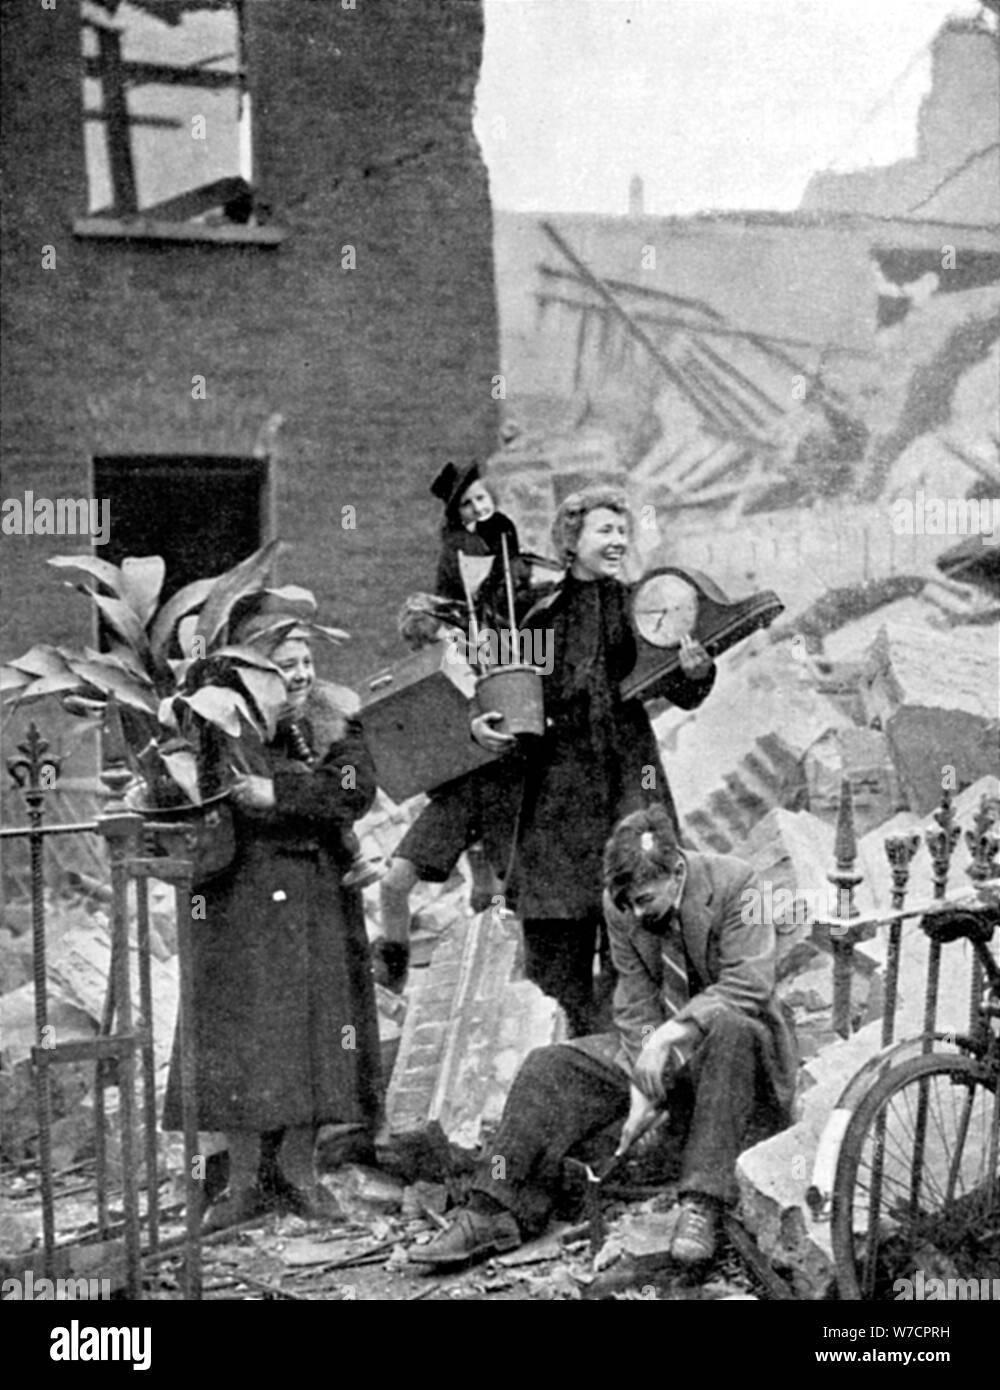 Les Londoniens sans abri par un raid aérien allemand pendant le Blitz, la seconde guerre mondiale, octobre 1940. Artiste : Inconnu Banque D'Images